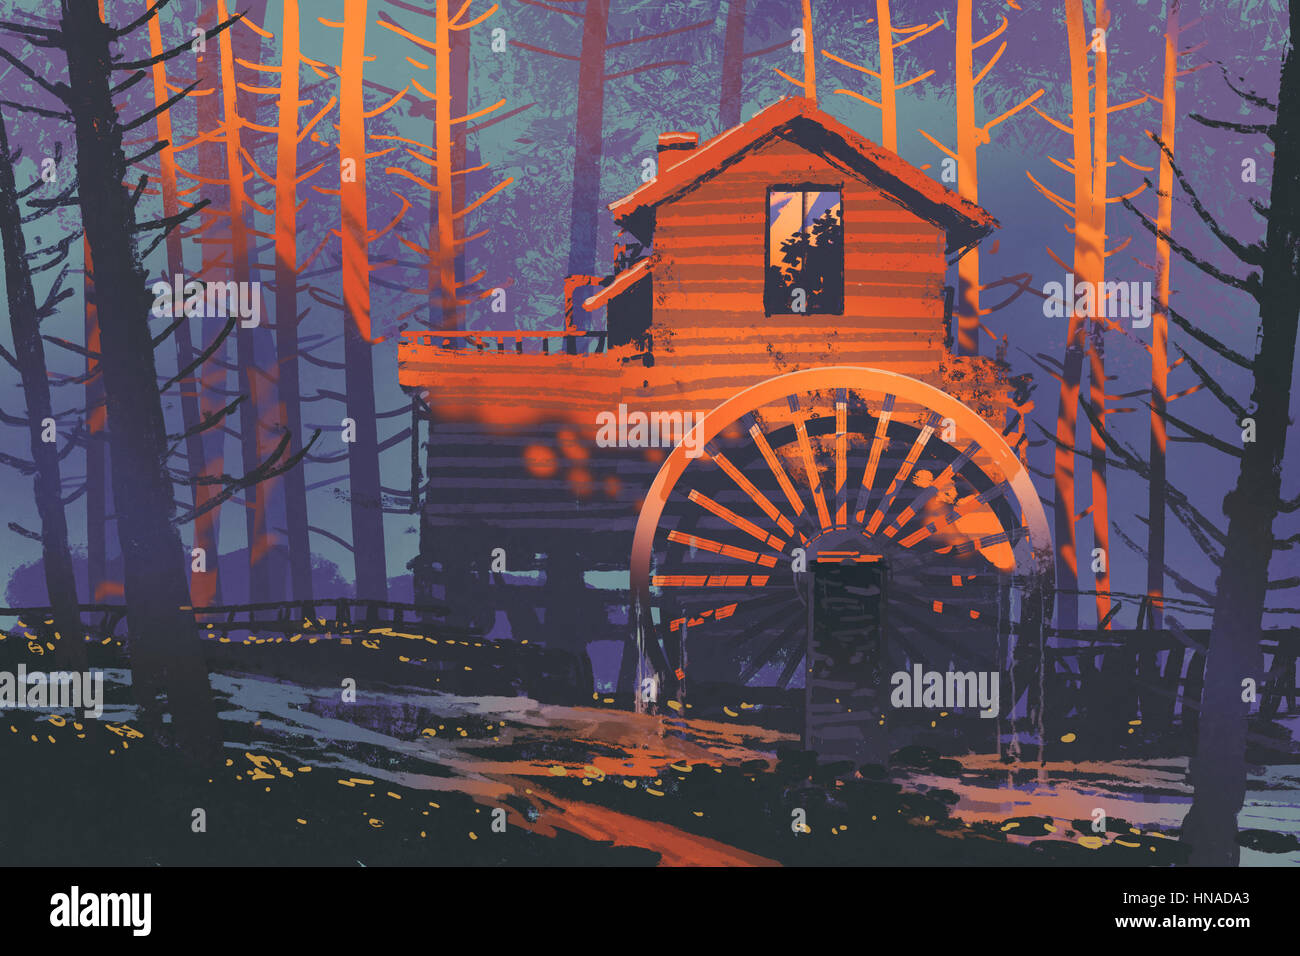 Maison en bois avec une roue hydraulique en forêt au coucher du soleil,illustration peinture Banque D'Images